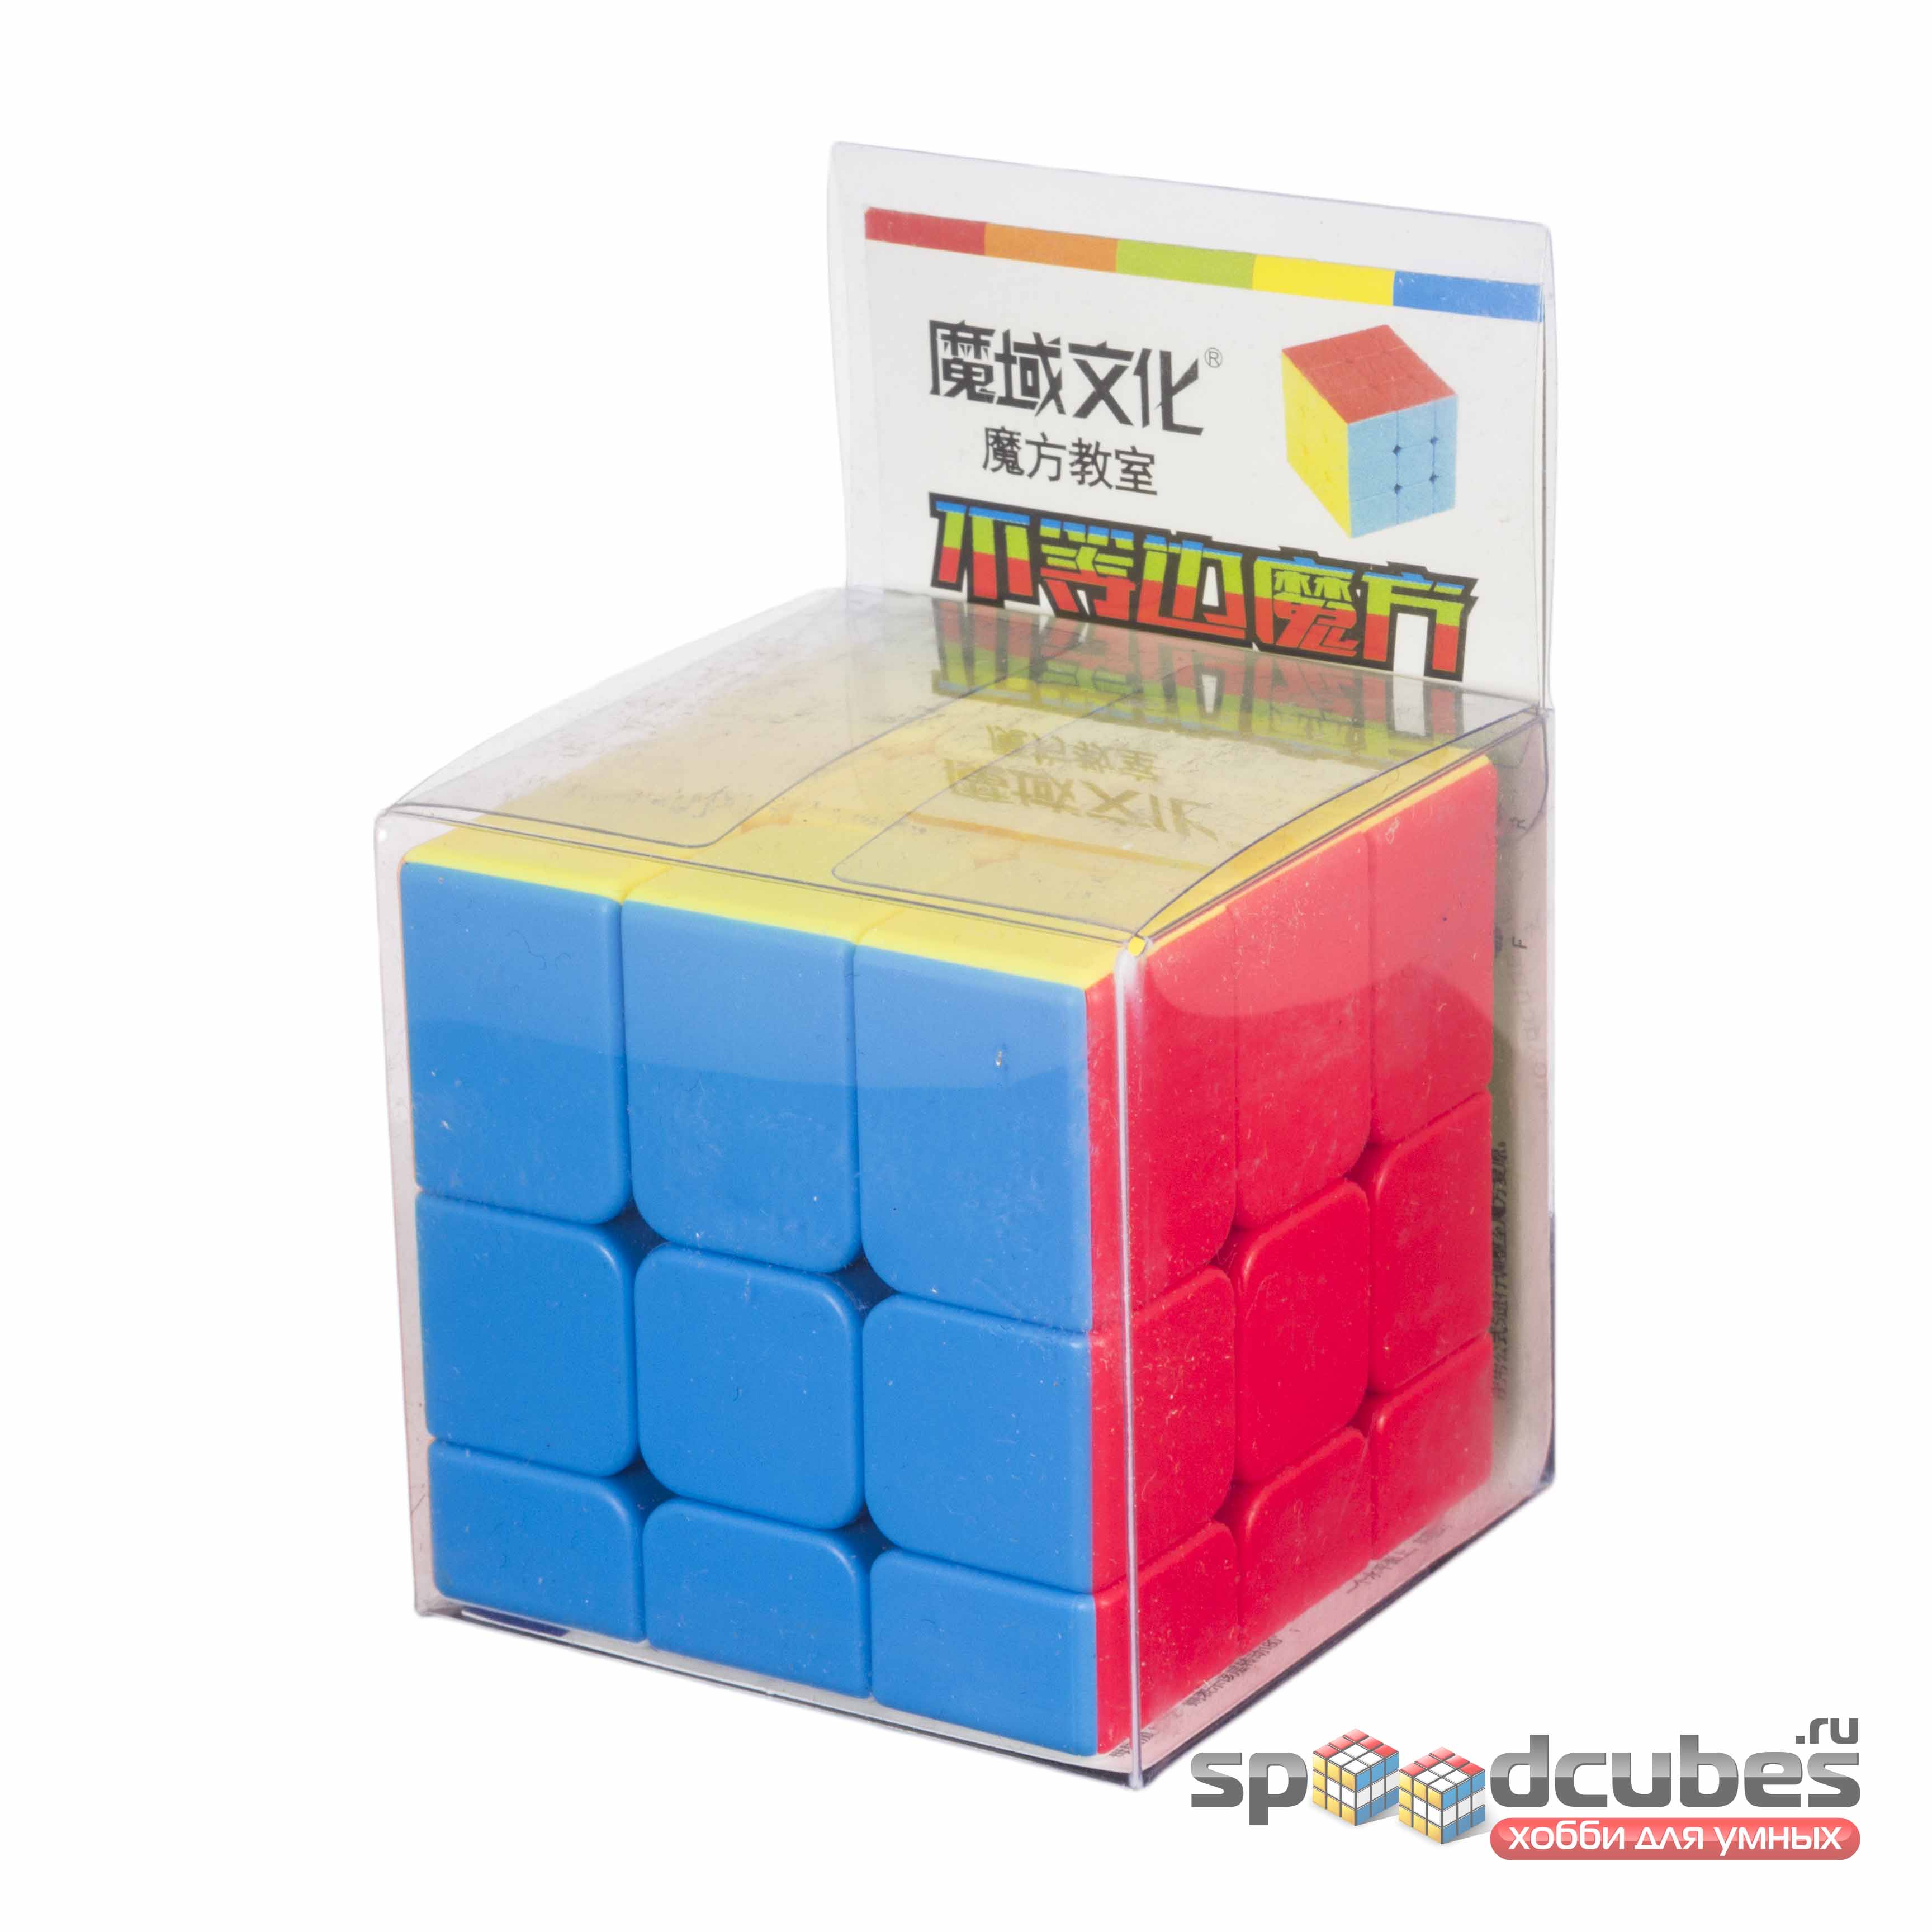 Moyu Mofangjiaoshi Asymmetric Cube 1